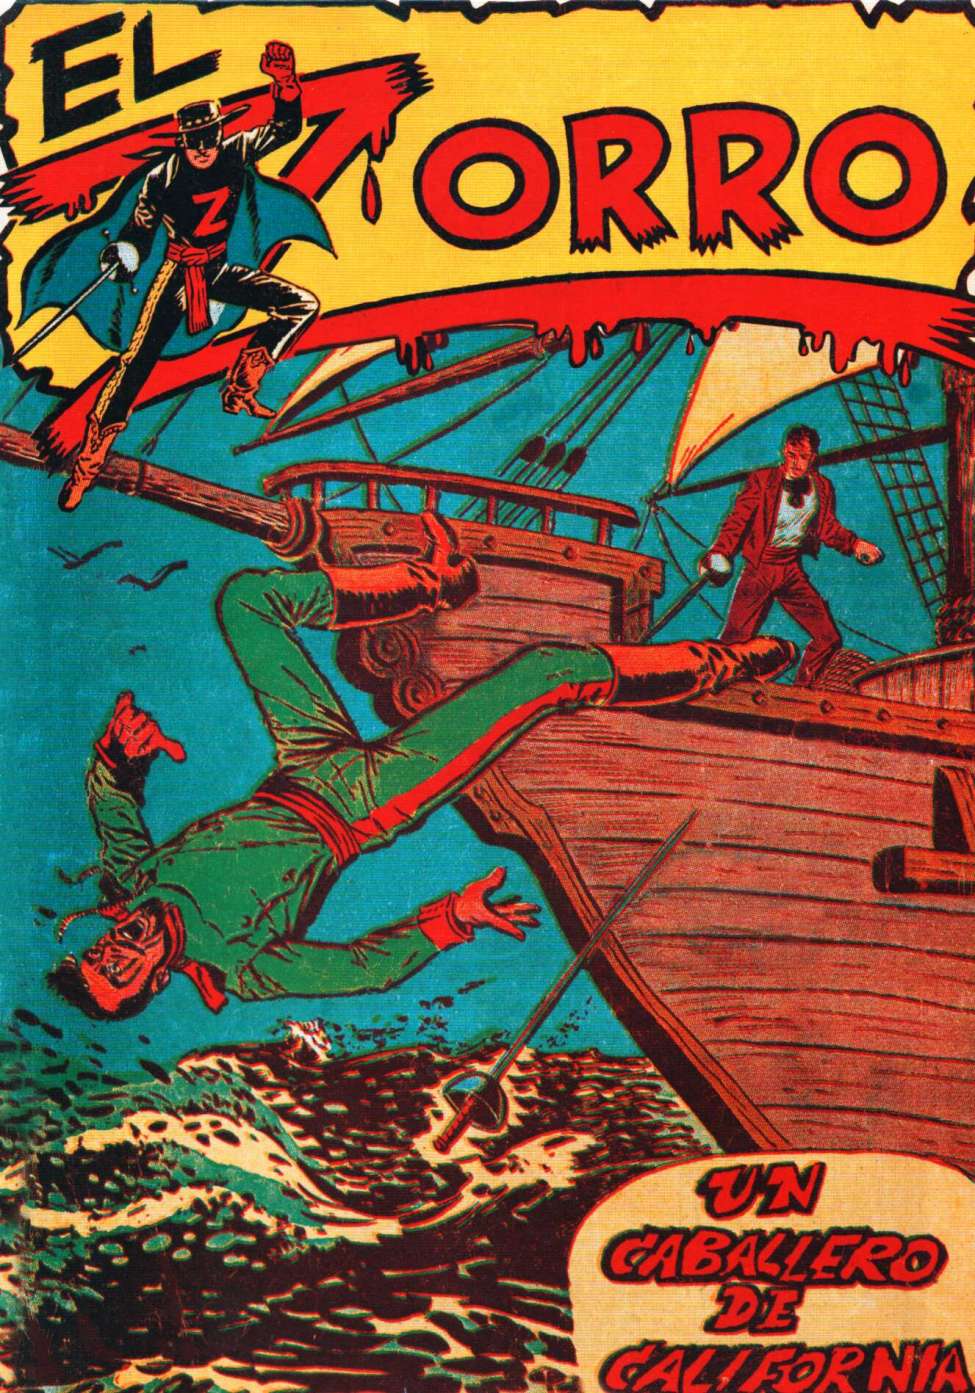 Comic Book Cover For El Zorro 1 - Un Cabbalero de California